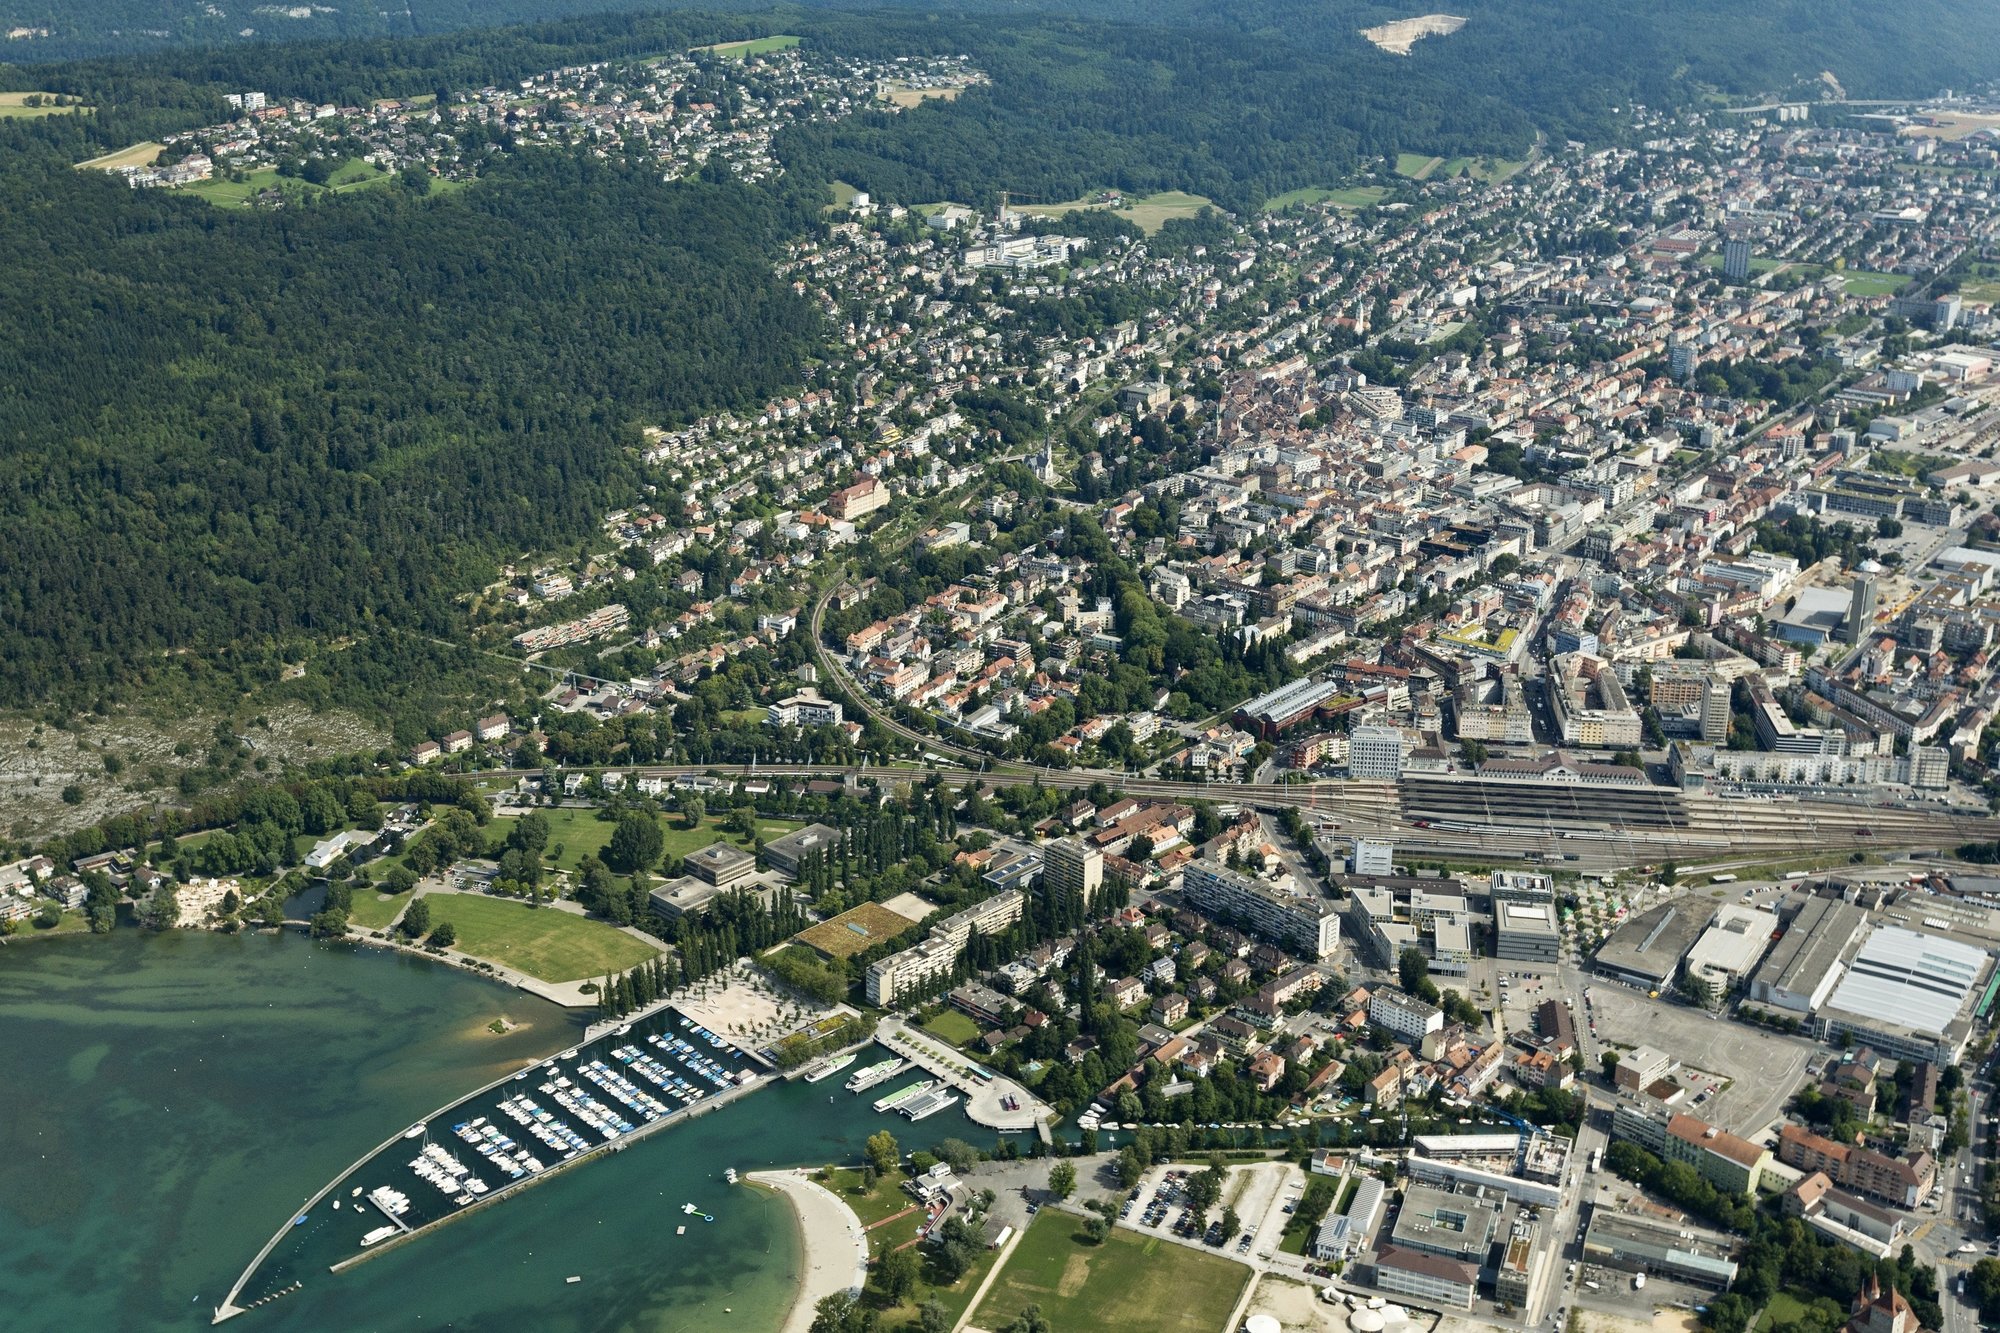 Le projet devrait permettre de réduire la distance historique entre les villes de Bienne et Nidau et leur lac.